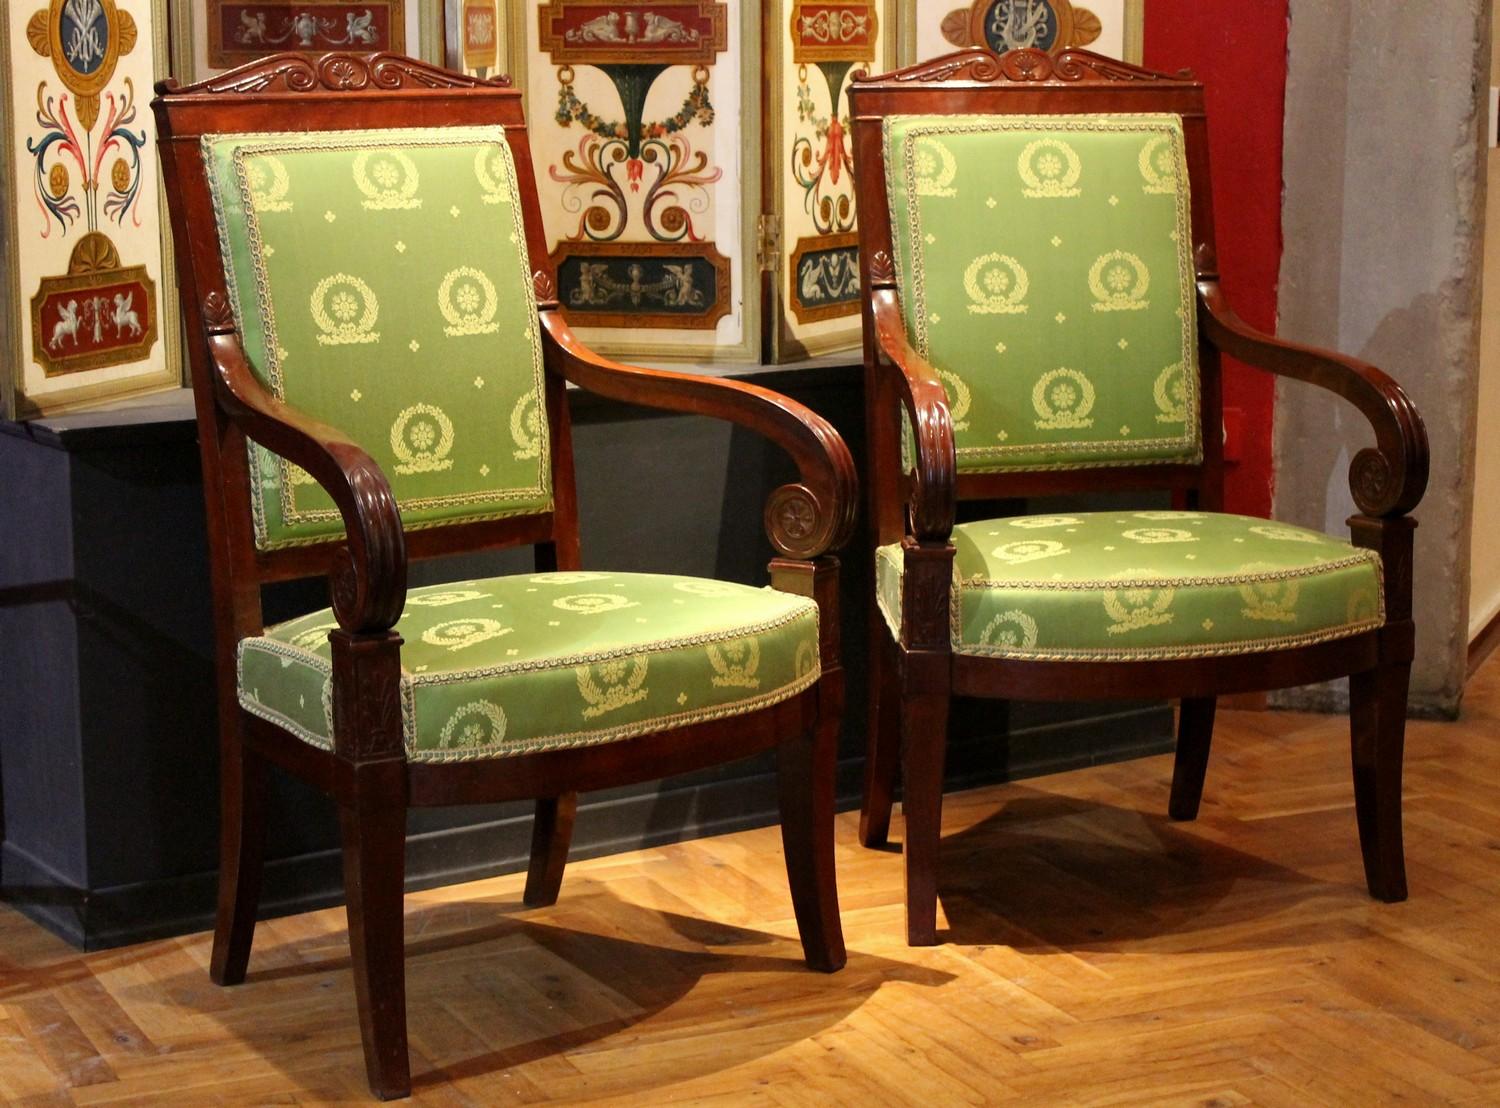 Dieses prächtige Paar französischer Sessel aus dem späten 18. und frühen 19. Jahrhundert könnte Jacob-Desmalter zugeschrieben werden, einem herausragenden Sessel- und Möbelschreiner, der im Louis-XVI-Stil und im Directoire-Stil der frühen Phase des